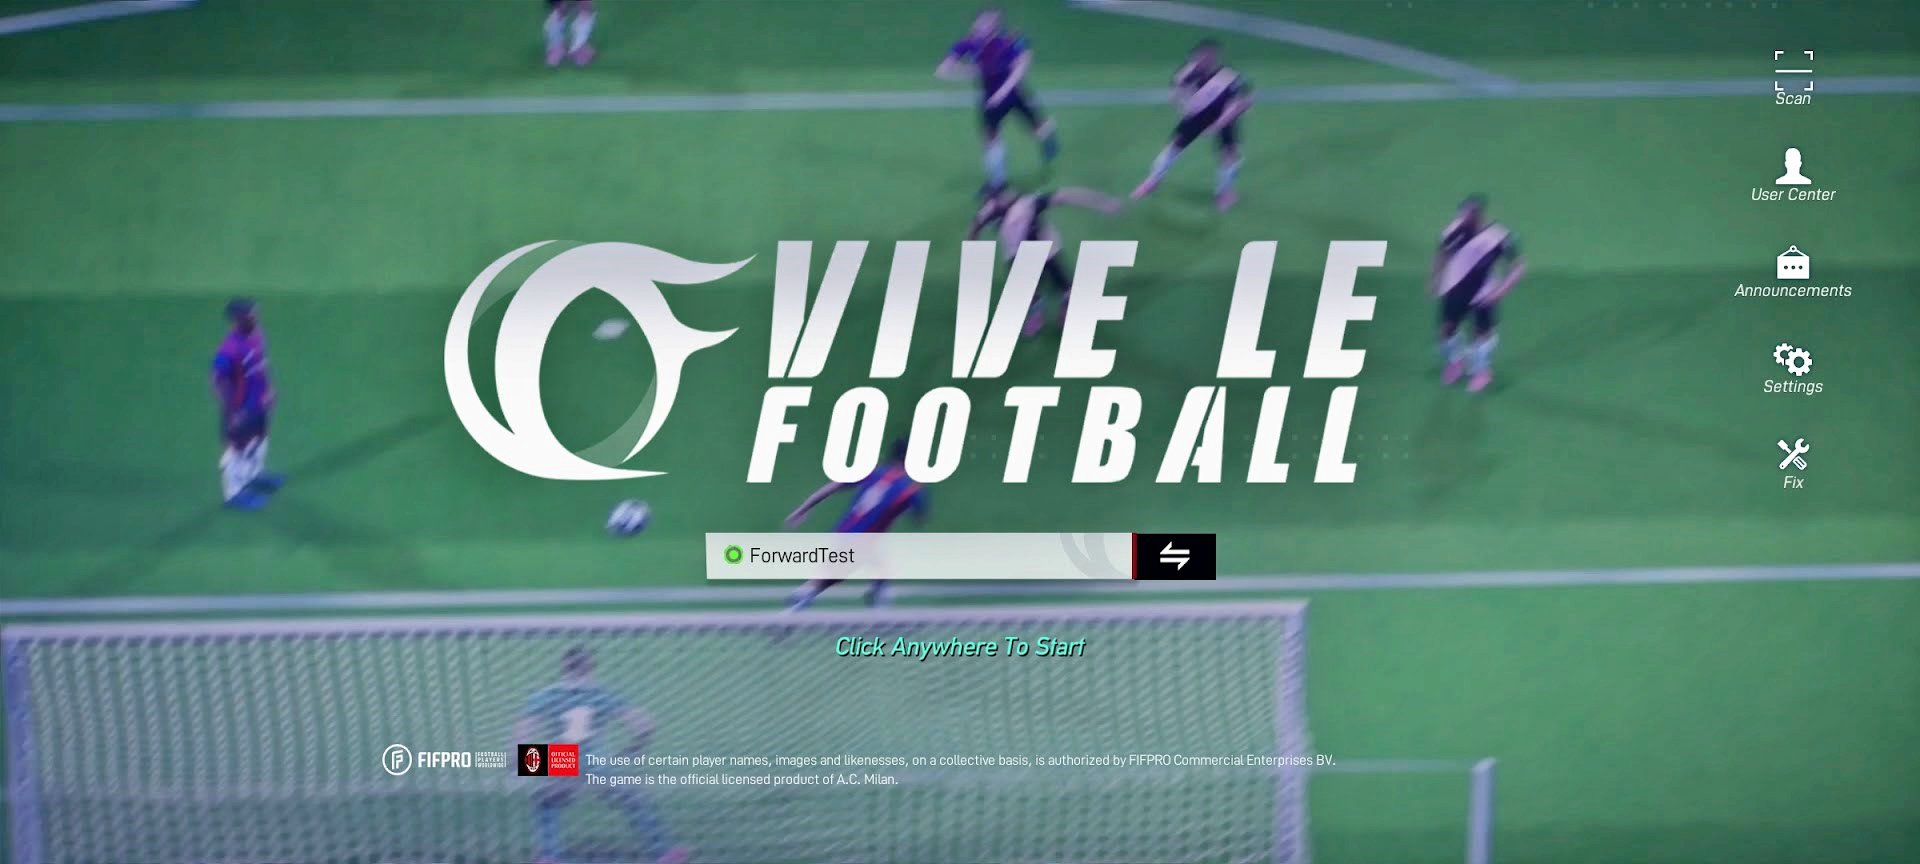 Vive Le Football: novo jogo concorrente de FIFA e PES inicia teste global